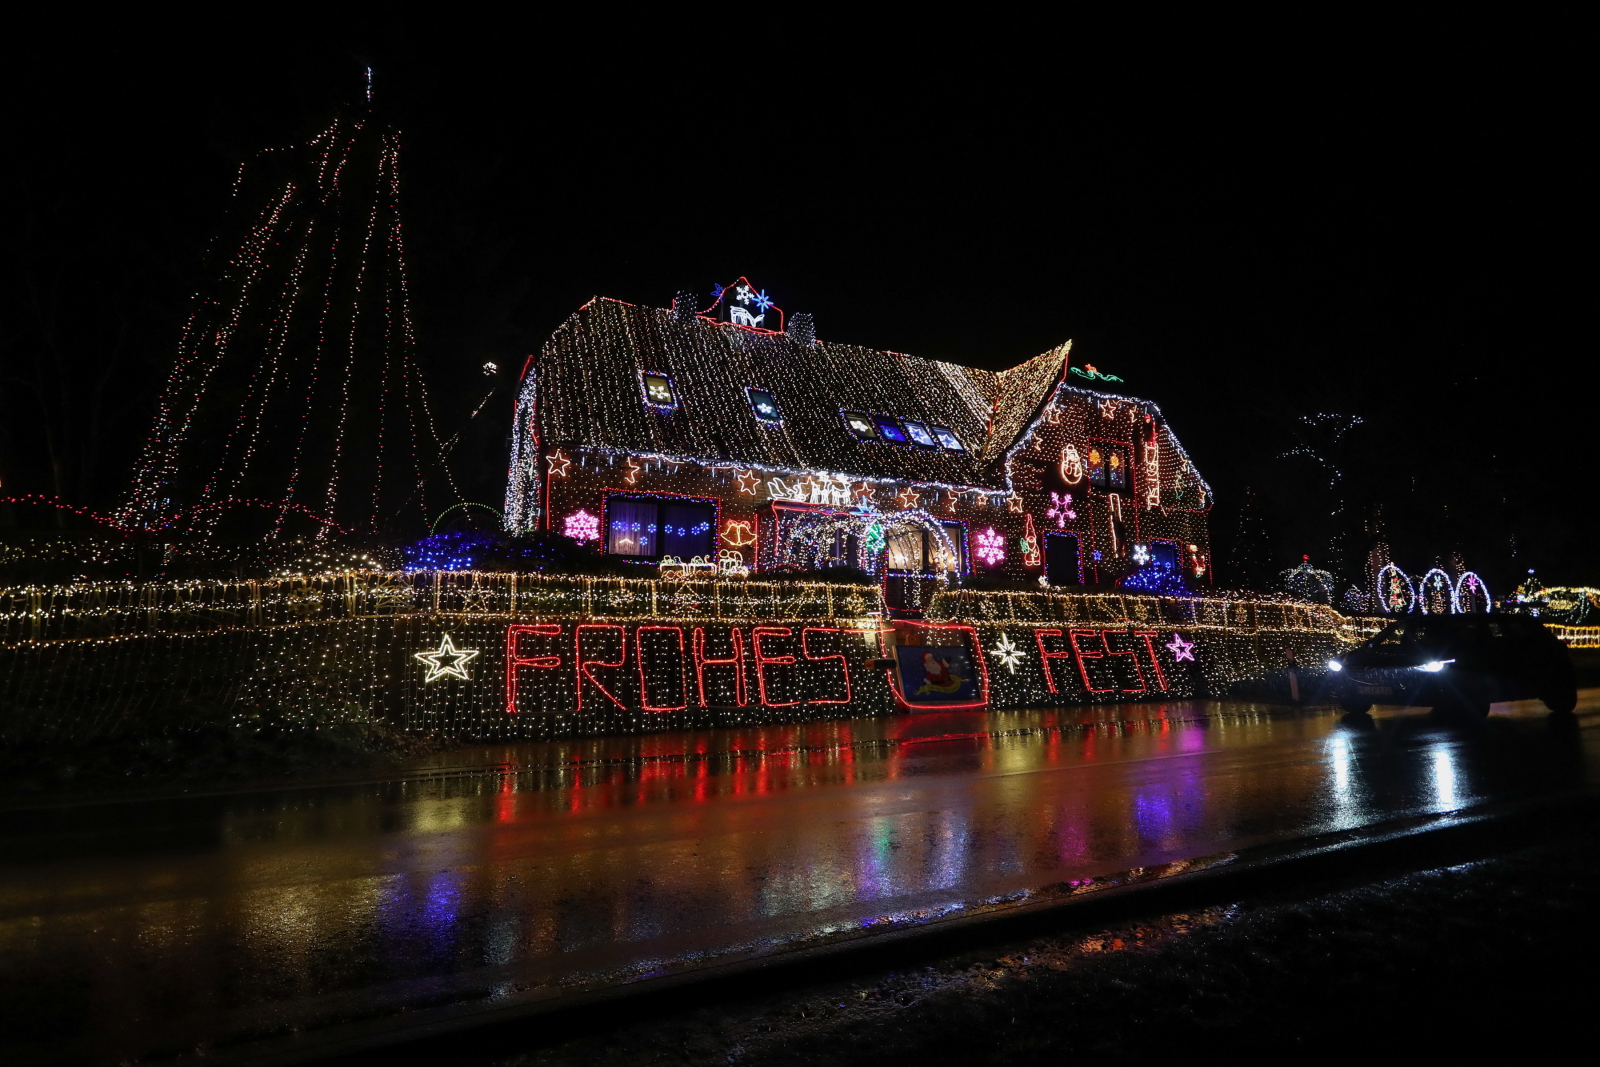 Iluminacje świąteczne rodziny Vogt z Calle, Niemcy Fot. PAP/EPA/FOCKE STRANGMANN